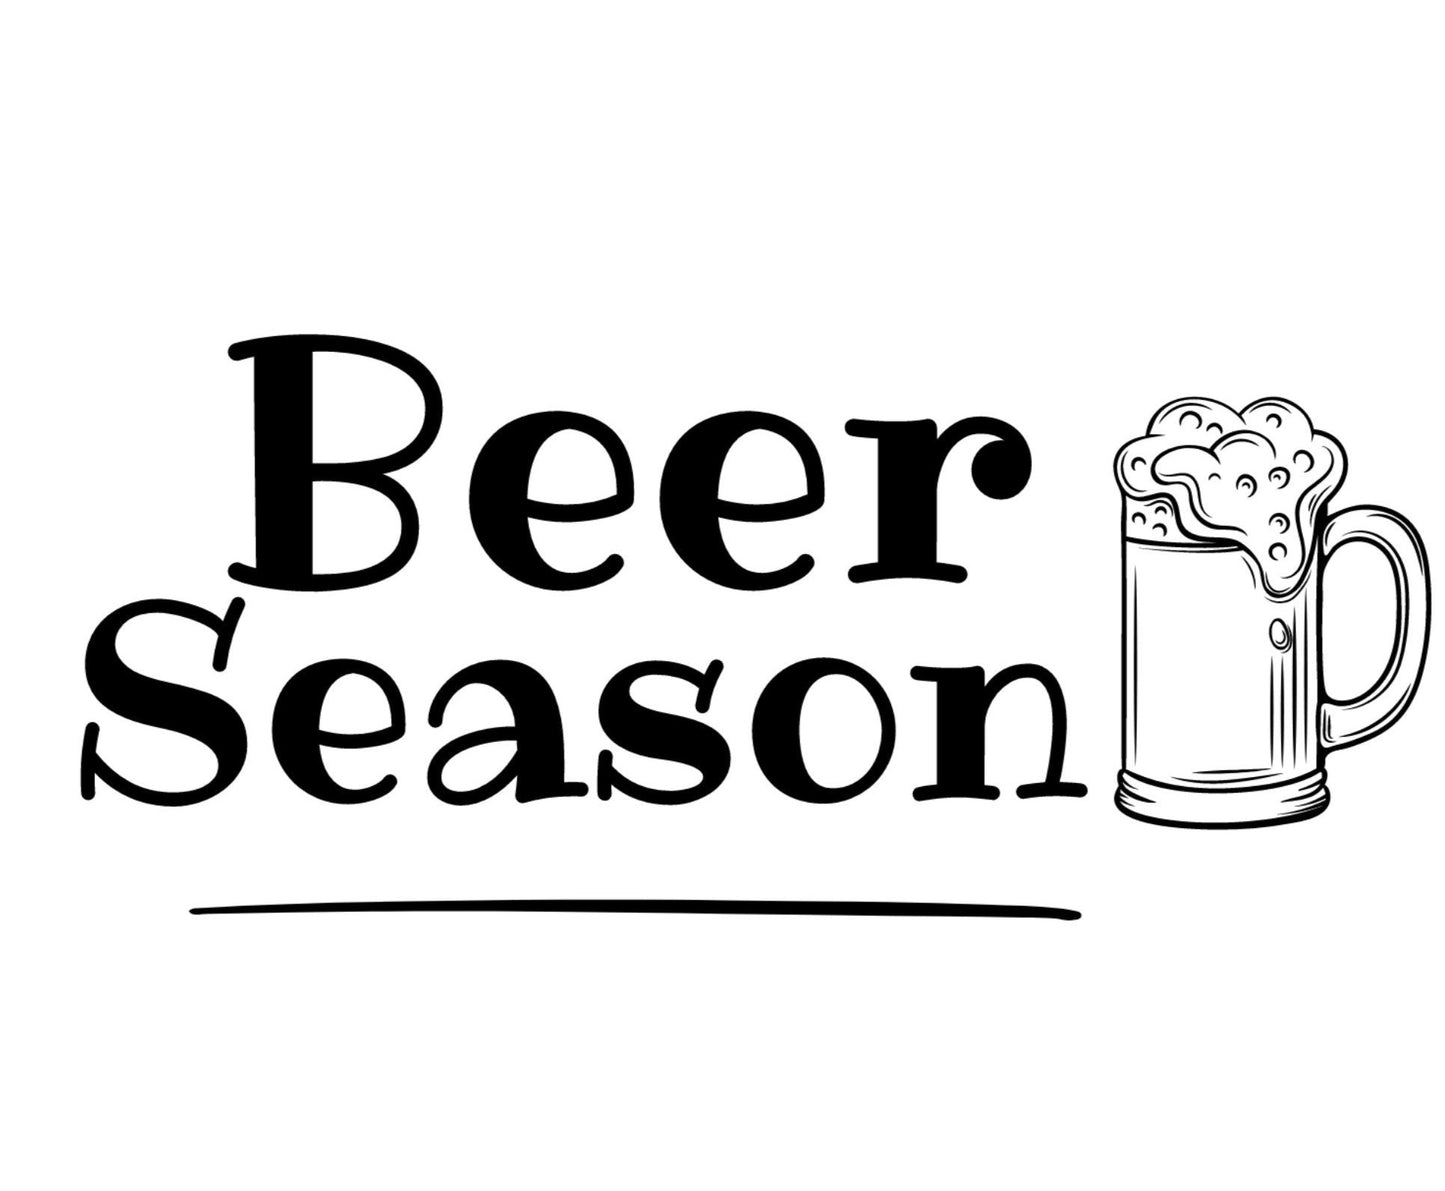 Beer Season